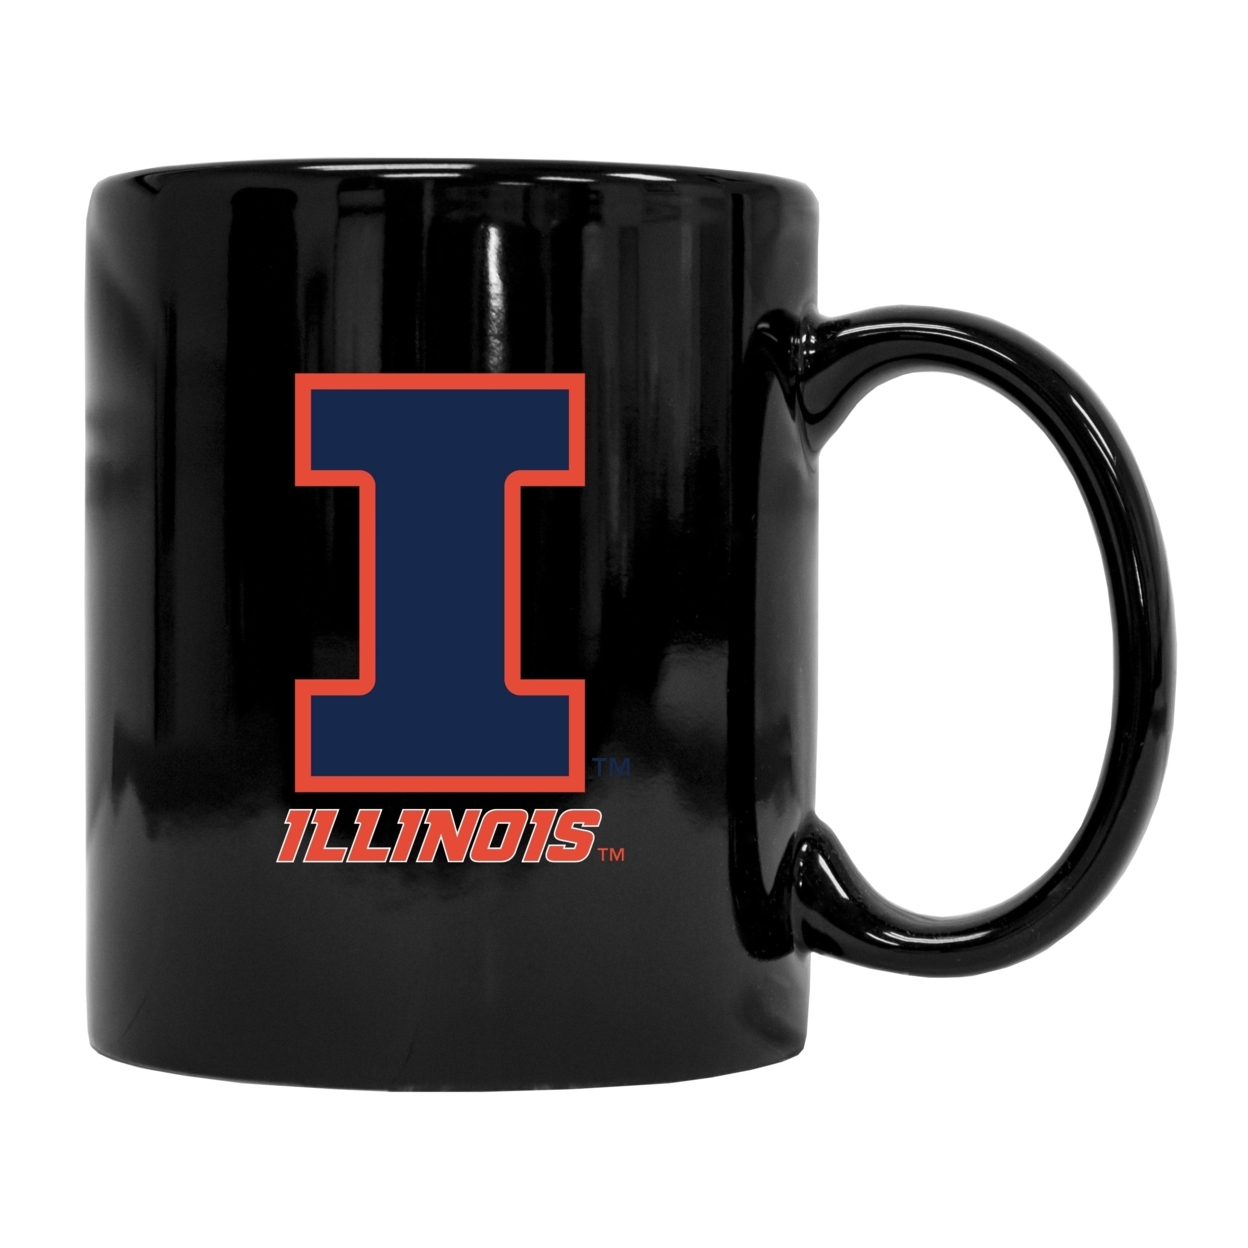 Illinois Fighting Illini Black Ceramic Coffee Mug 2-Pack (Black).